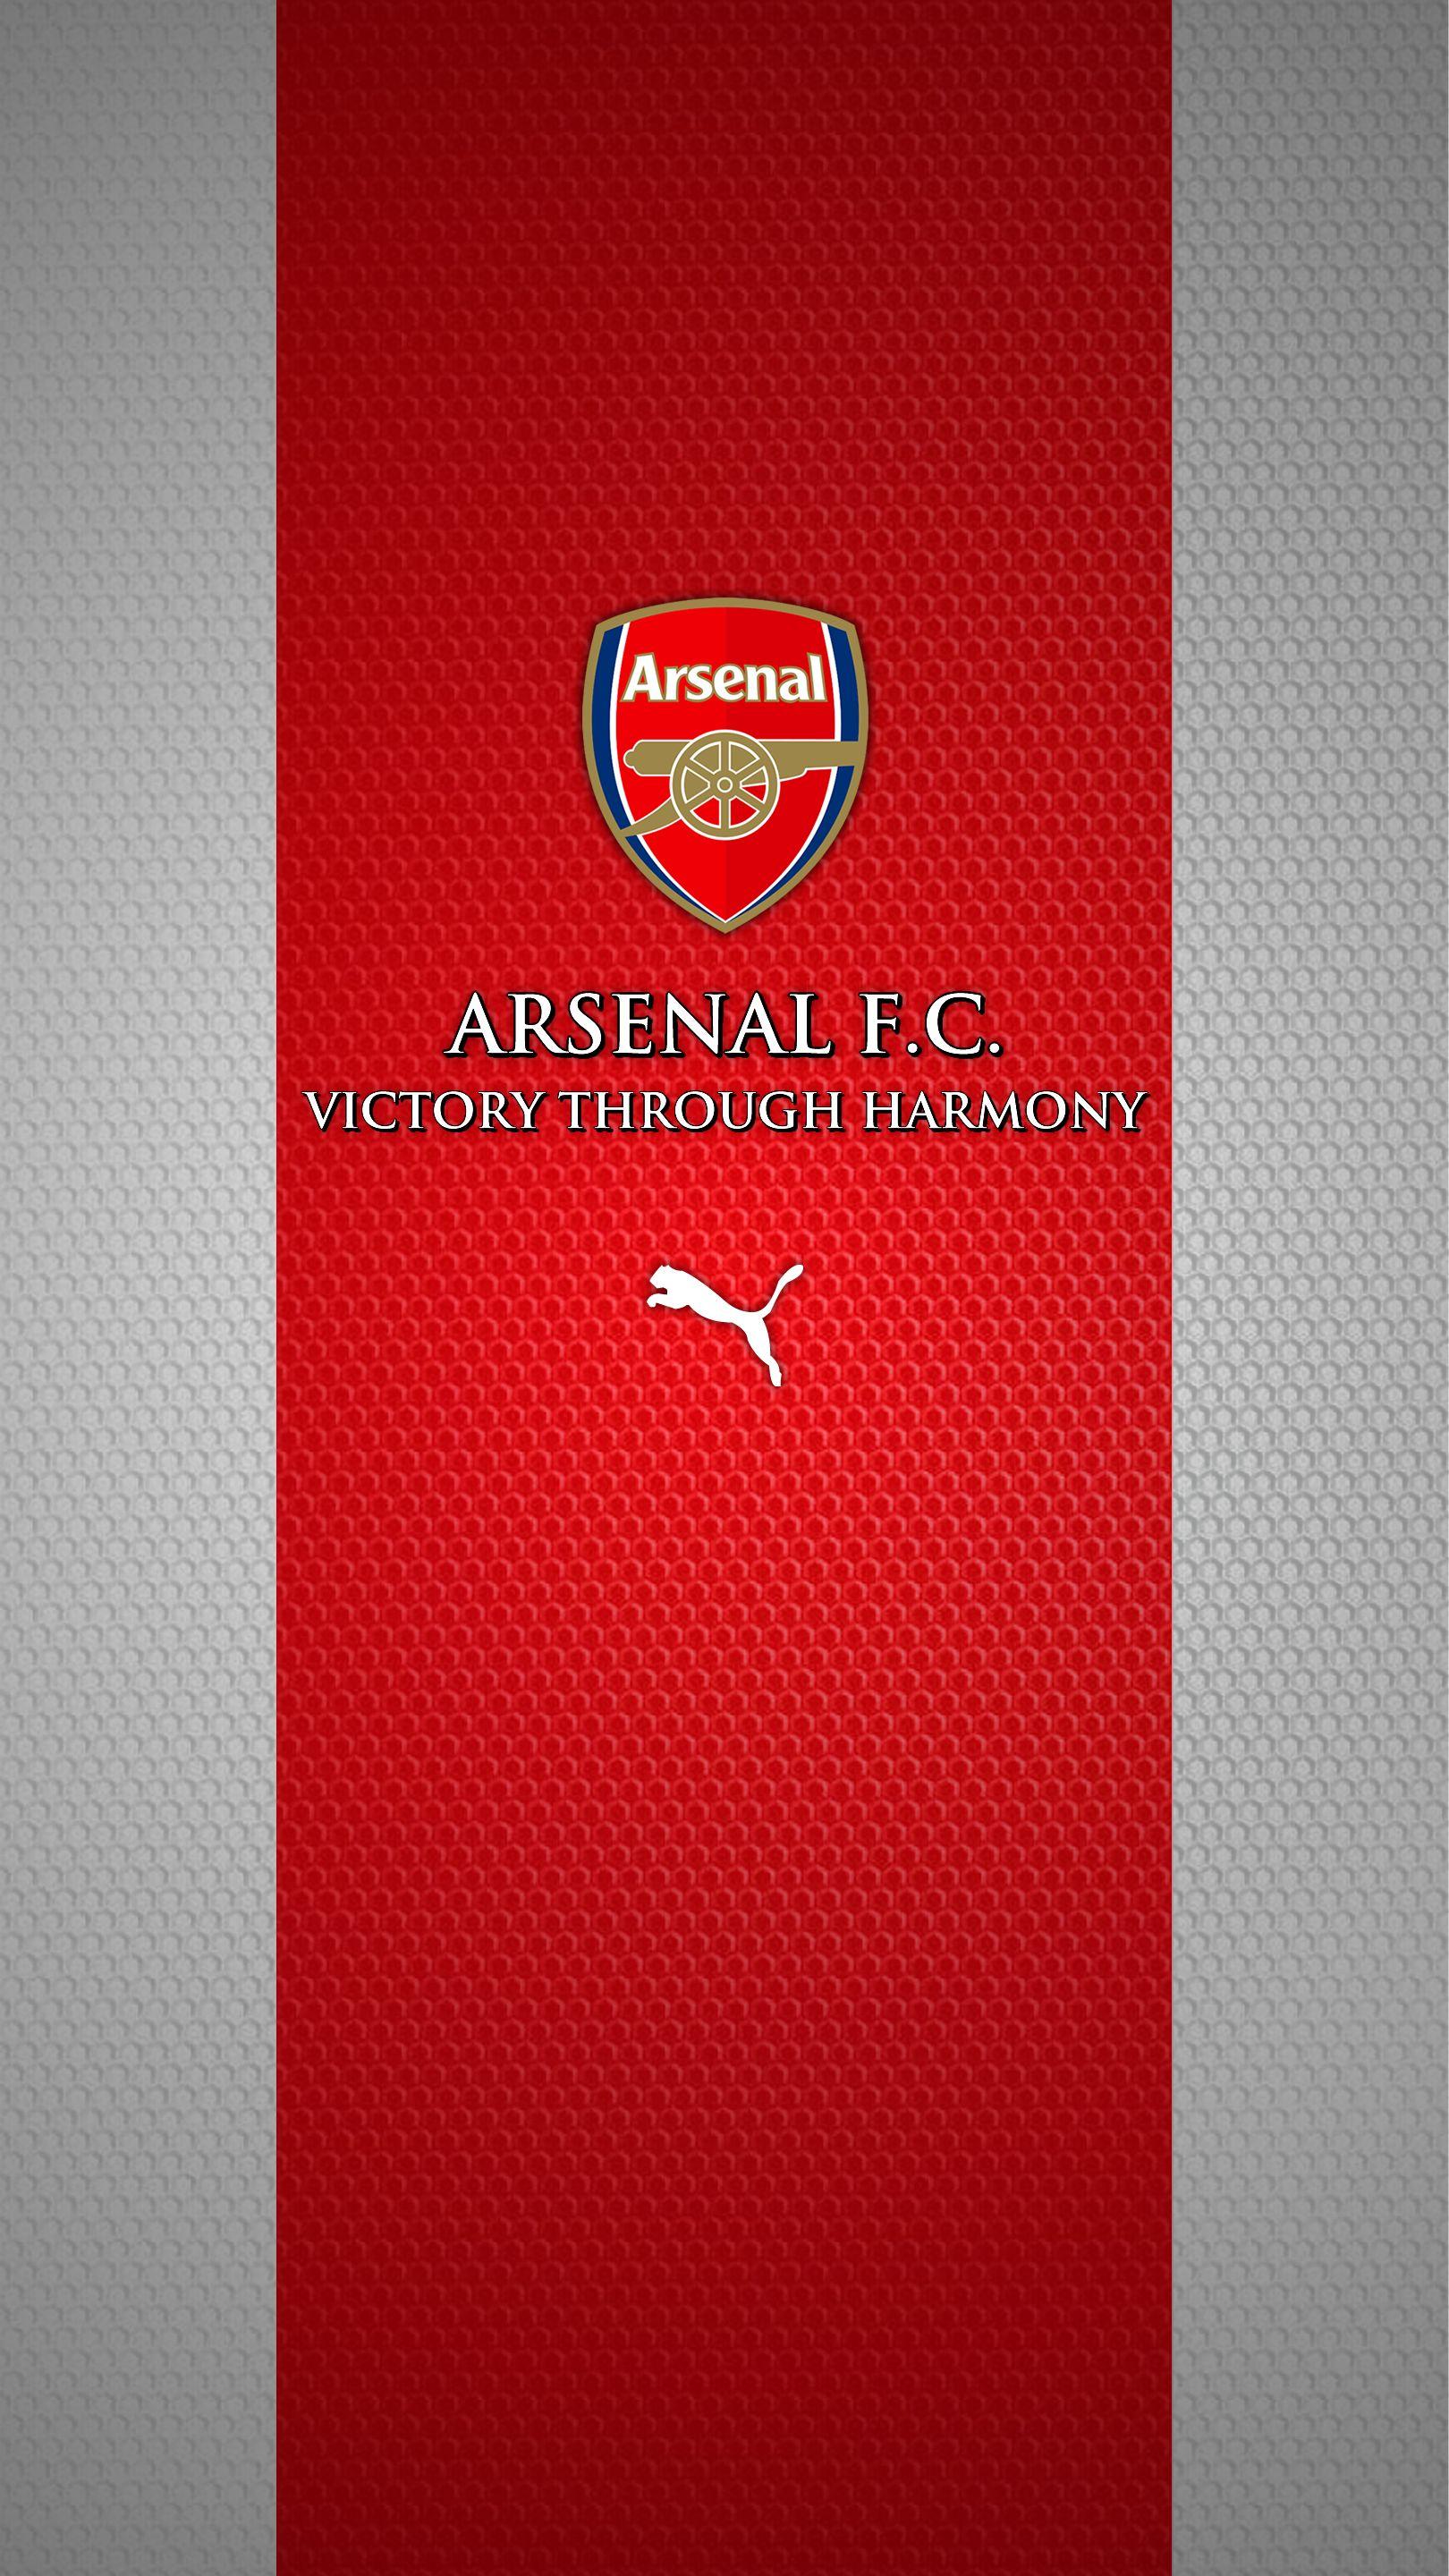 Invincibles Arsenal FC Wallpaper